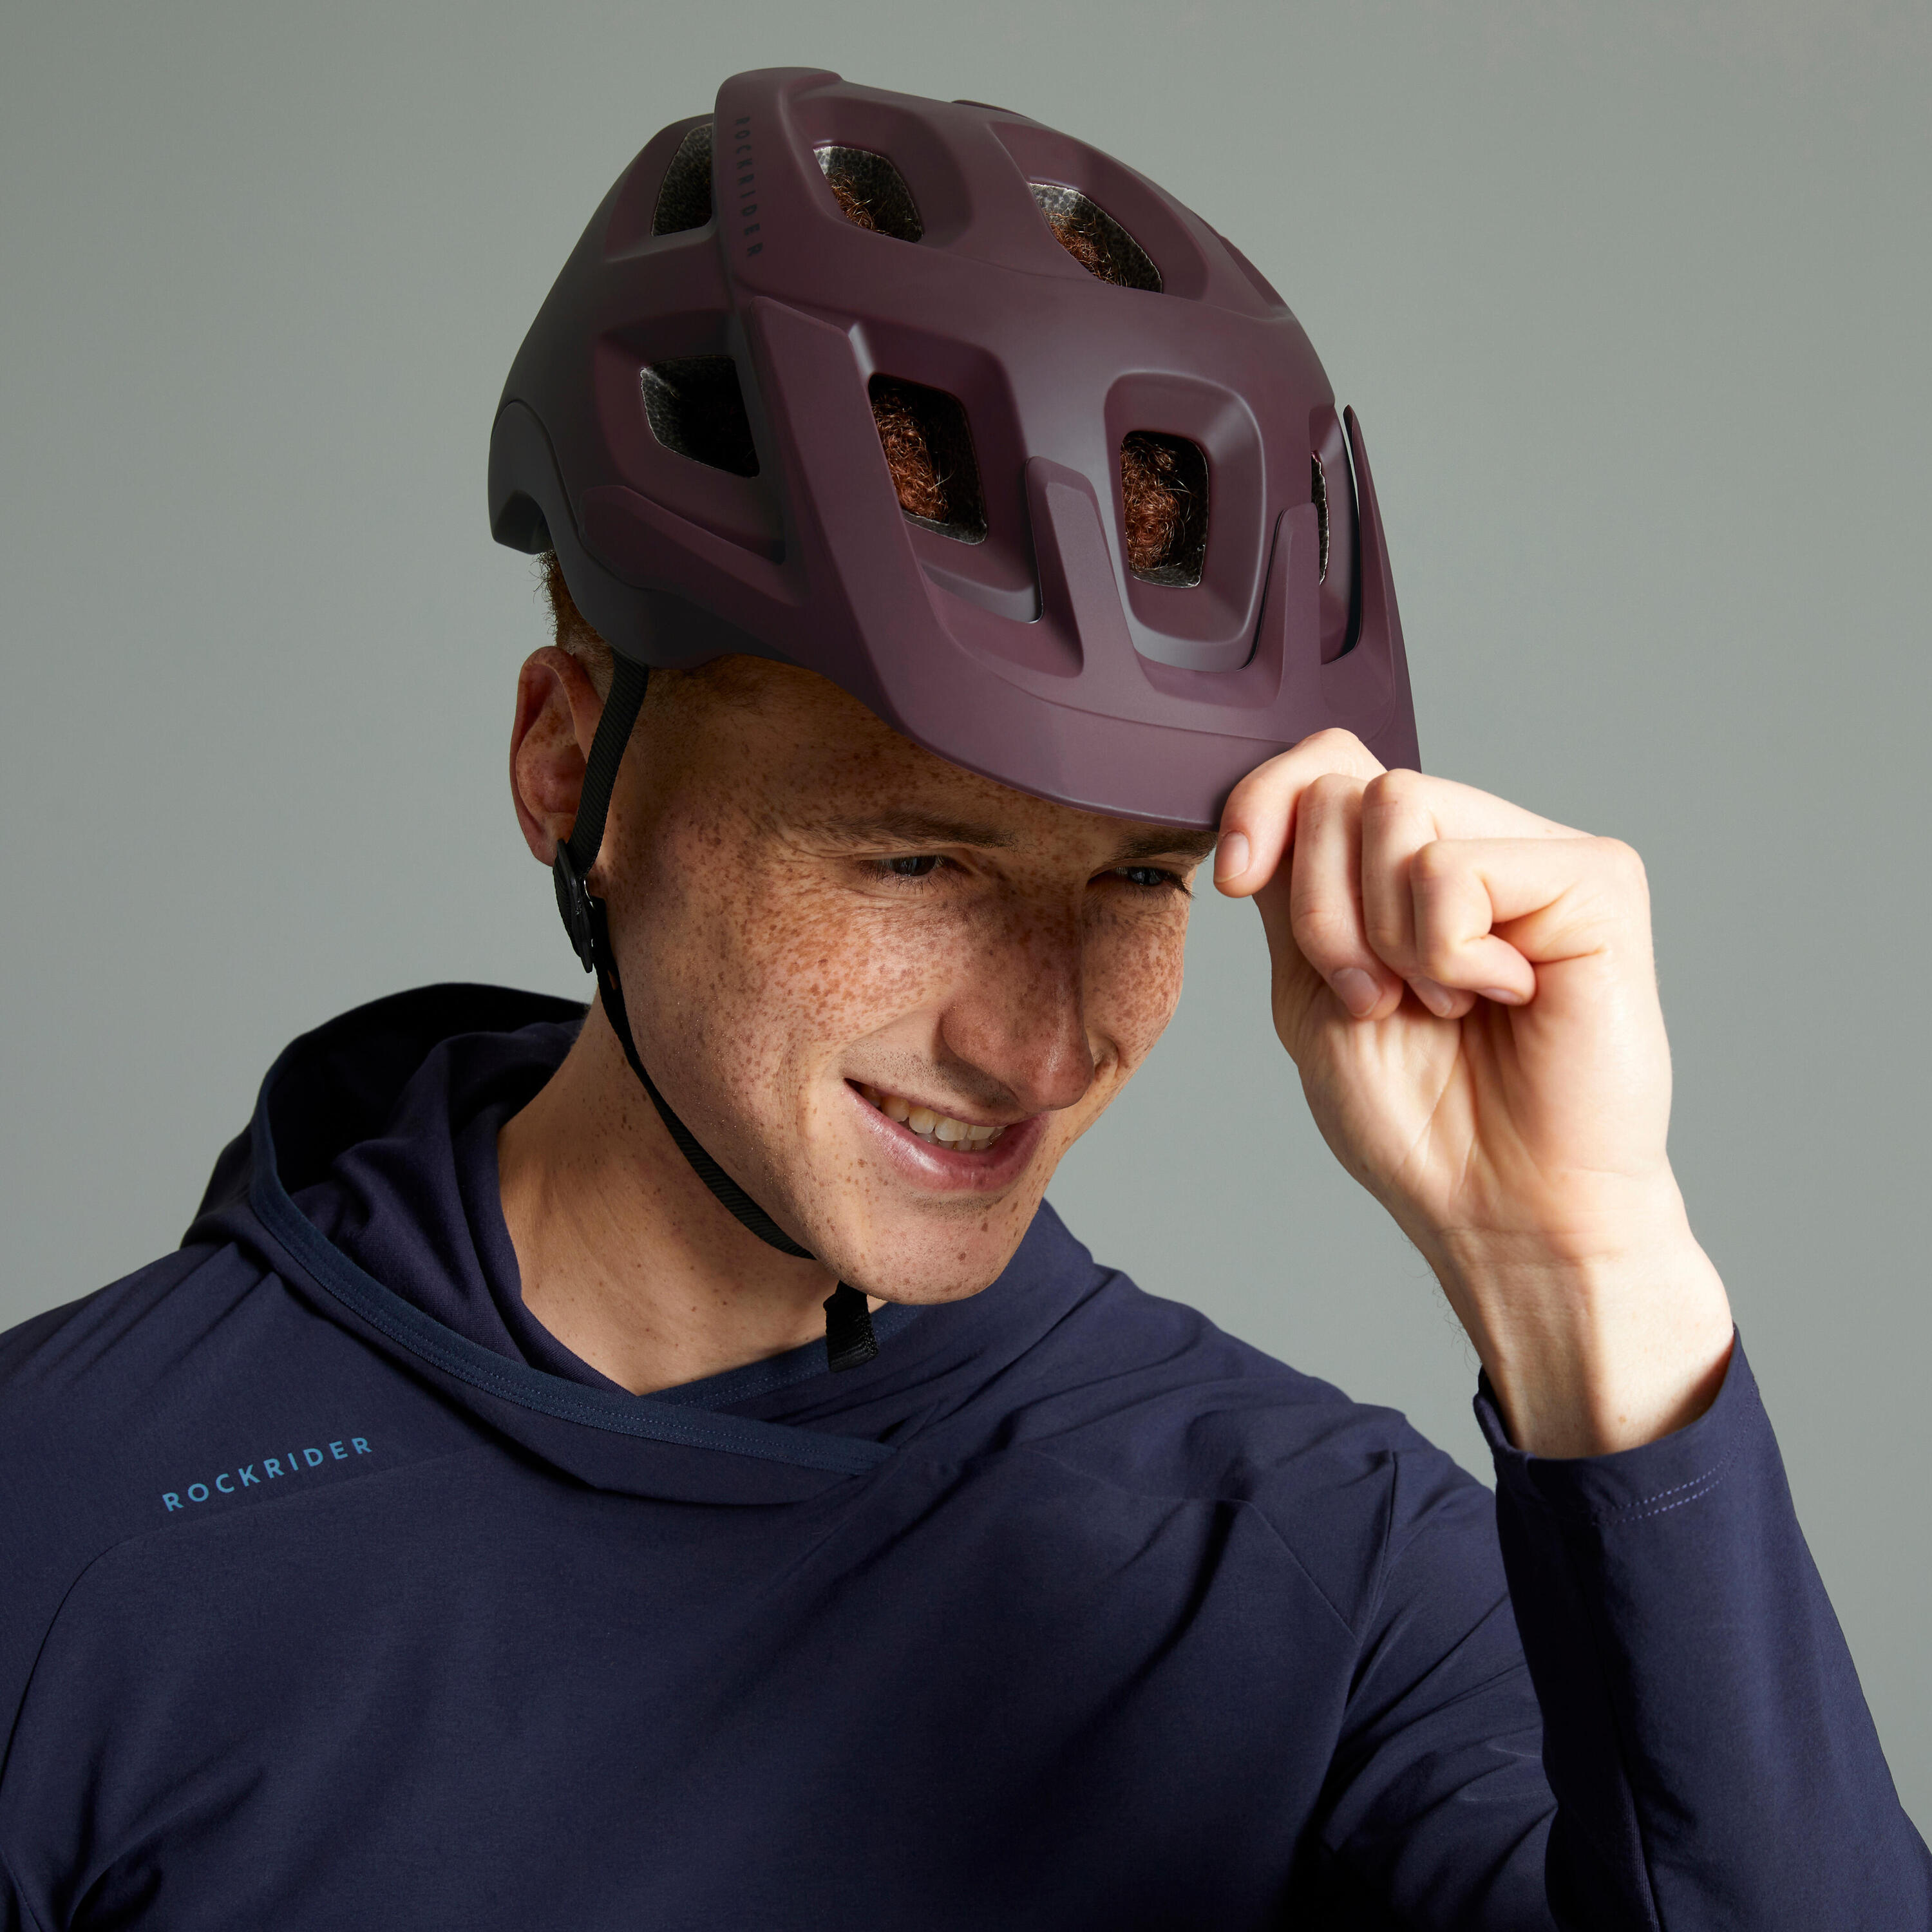 Mountain Bike Helmet EXPL 500 - Burgundy 14/23